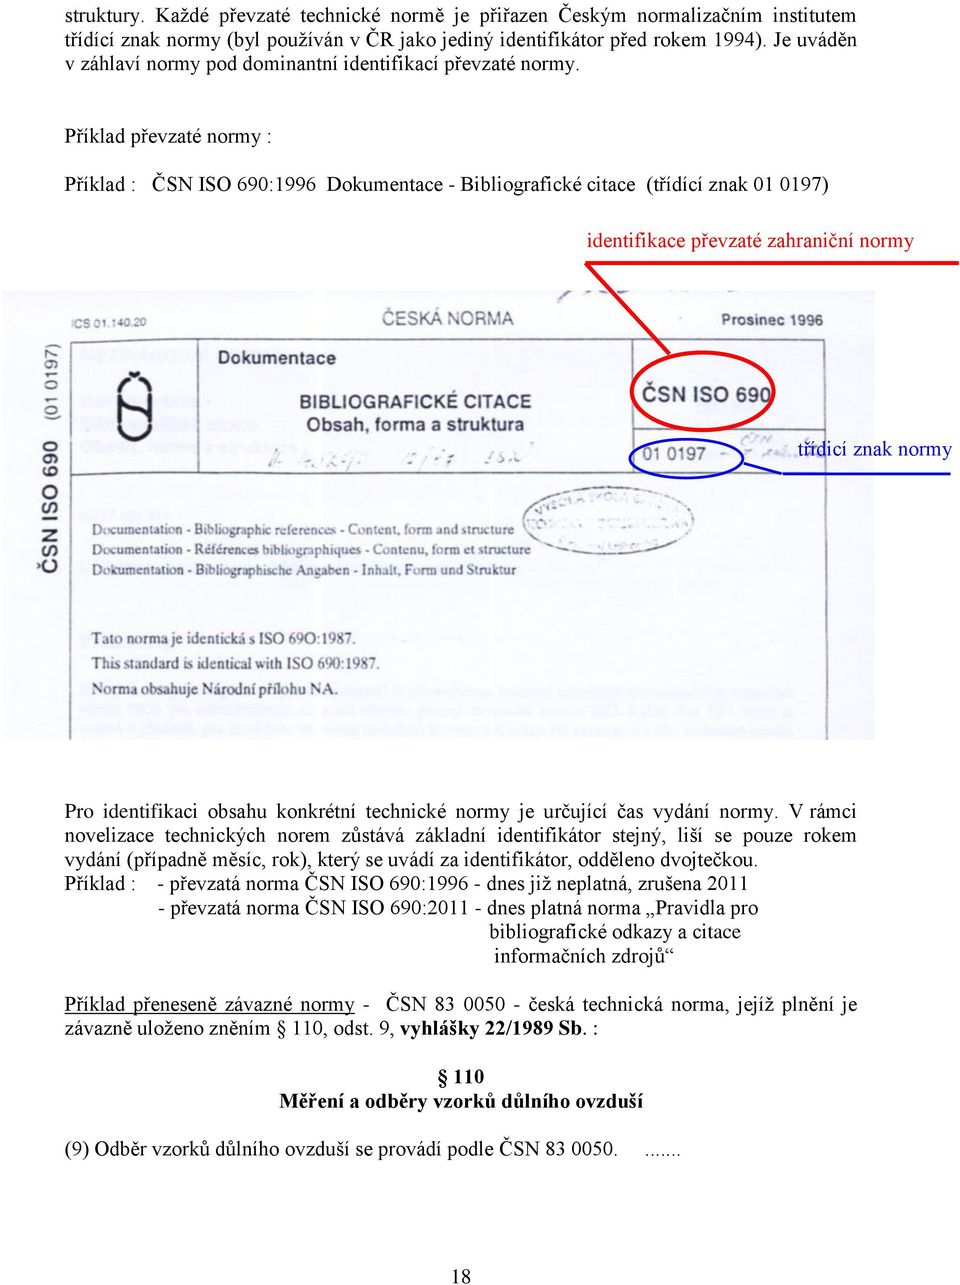 Příklad převzaté normy : Příklad : ČSN ISO 690:1996 Dokumentace - Bibliografické citace (třídící znak 01 0197) identifikace převzaté zahraniční normy třídicí znak normy Pro identifikaci obsahu